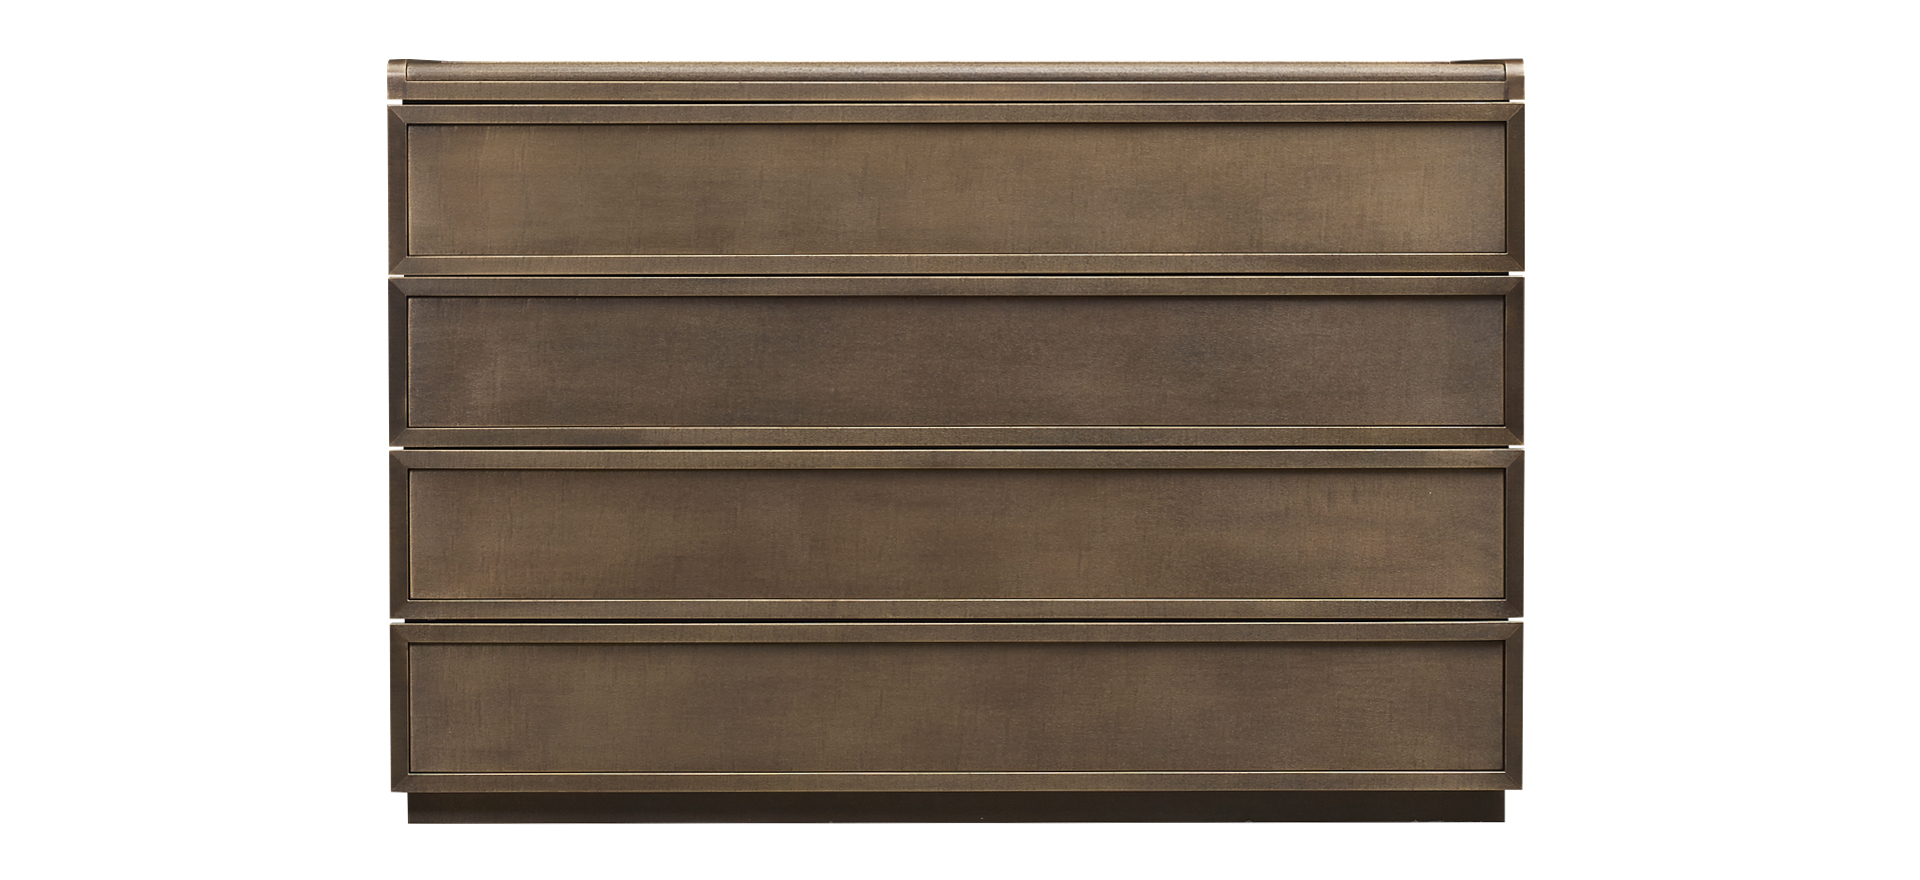 Orione è una cassettiera in legno rivestita in pelle, del catalogo di Promemoria | Promemoria